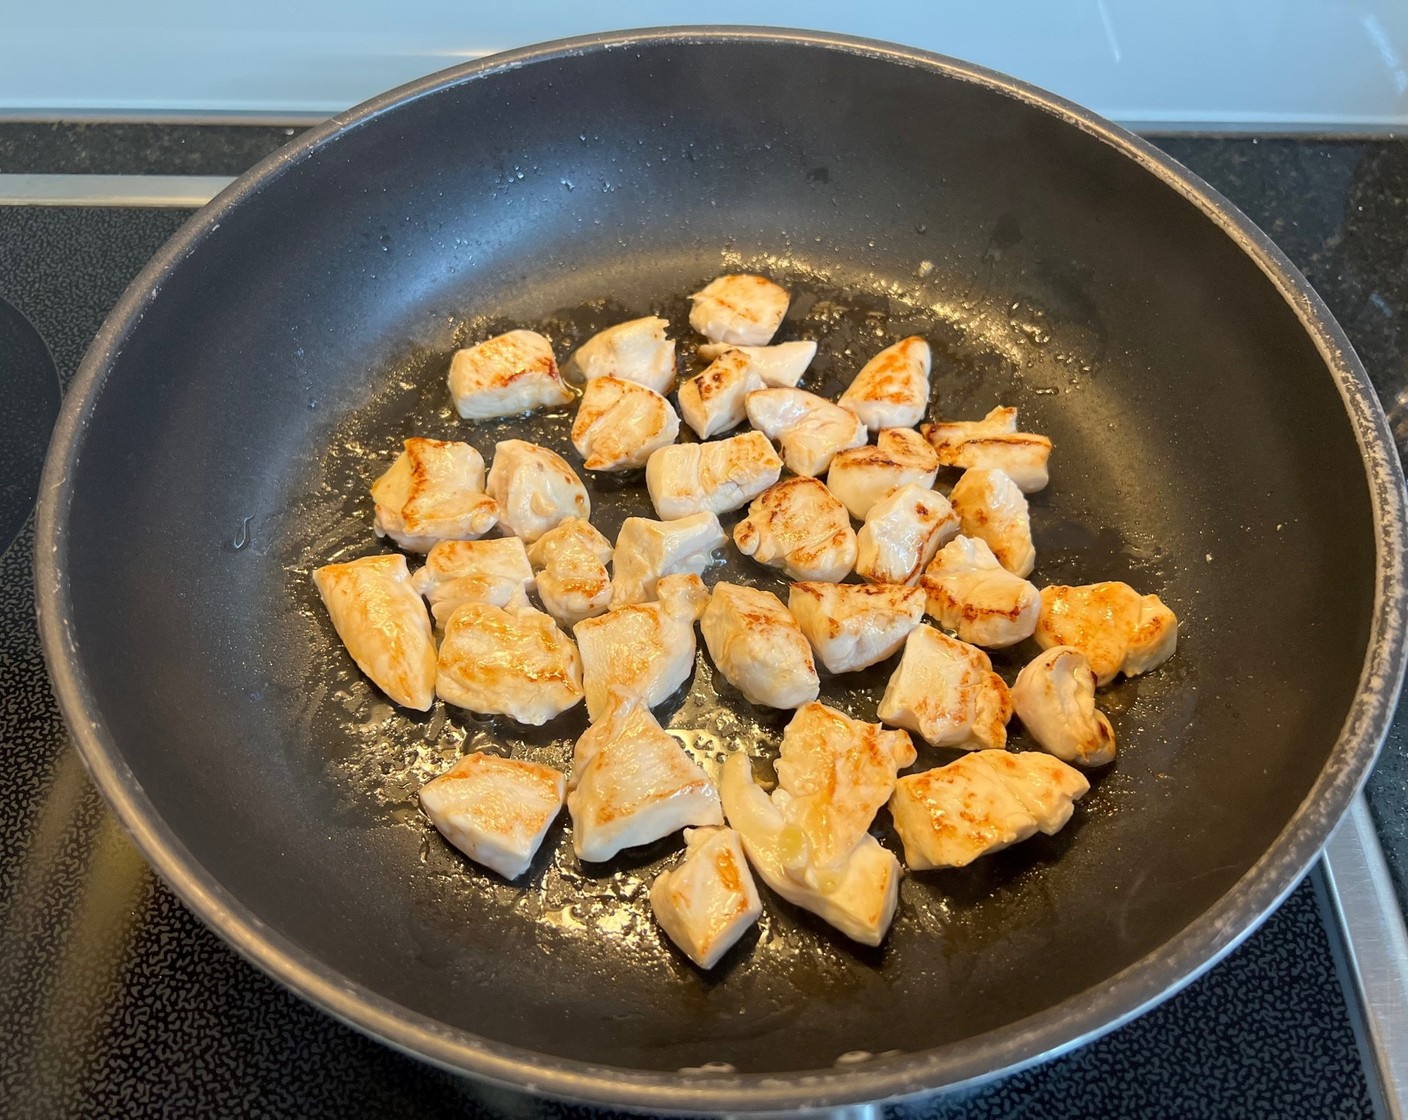 Schritt 2 Pouletbrust (600 g) in kleine Stücke schneiden und in Bratbutter (nach Bedarf) goldbraun anbraten, mit
Salz (nach Bedarf) und Pfeffer (wenig) würzen. Anschliessend das Fleisch auf einem Teller beiseitestellen.